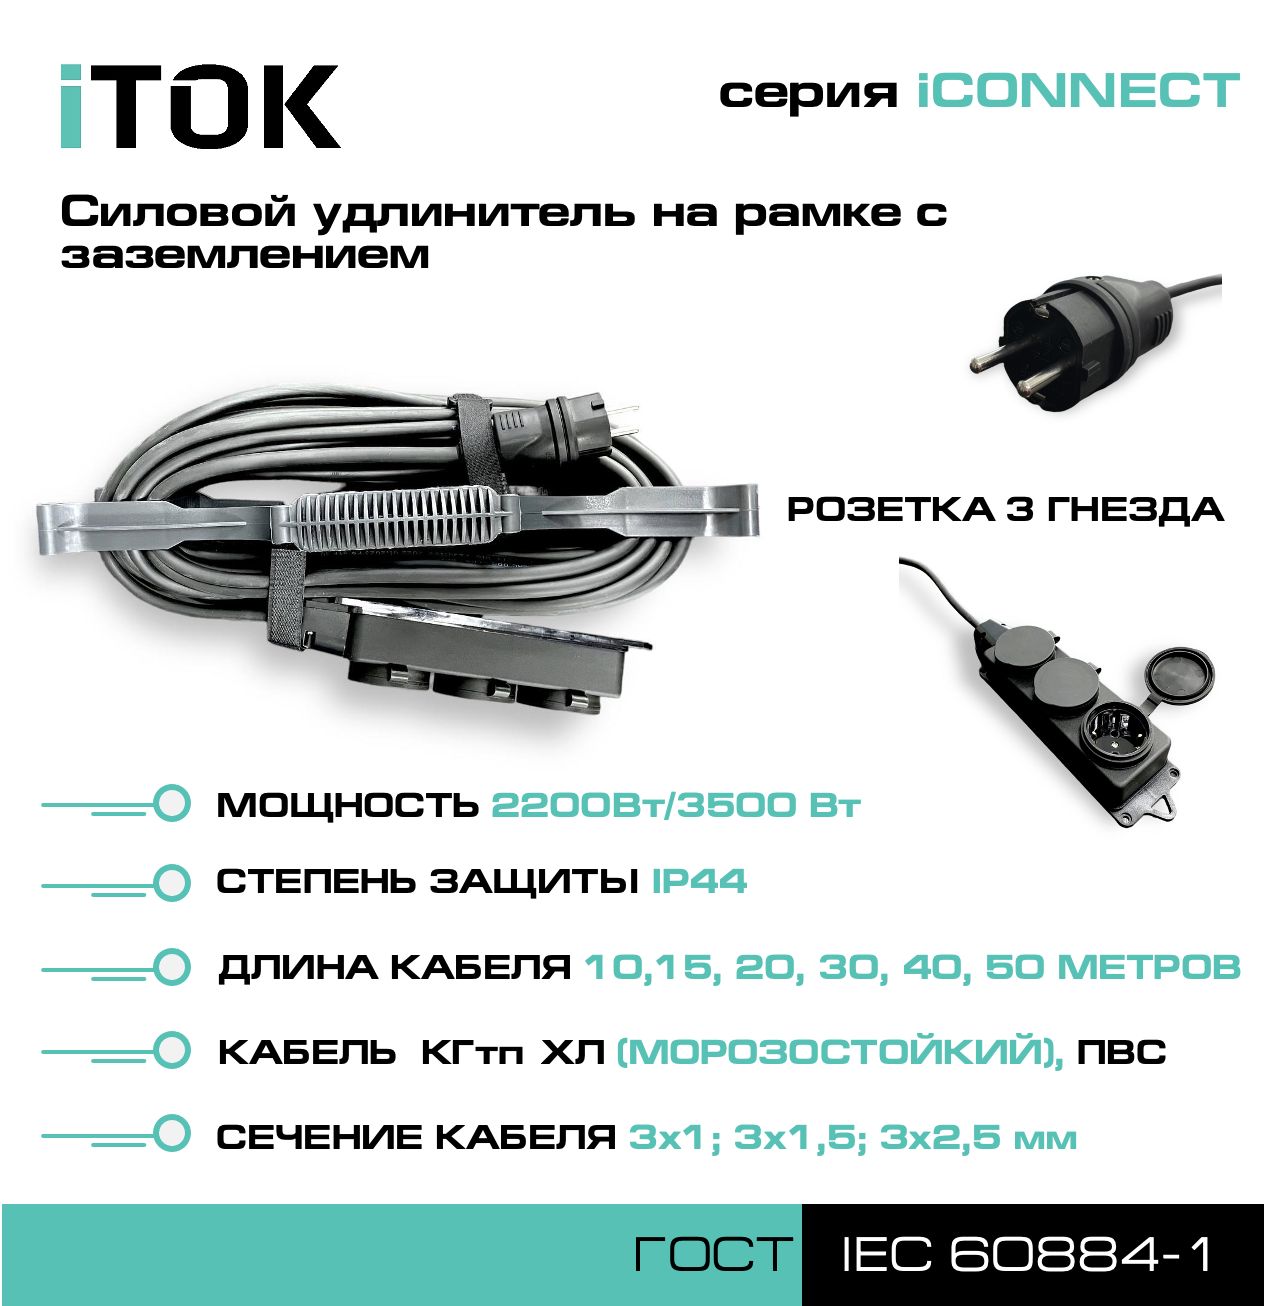 фото Удлинитель на рамке с заземлением серии itok iconnect пвс 3х1 мм 3 гнезда ip44 15 м